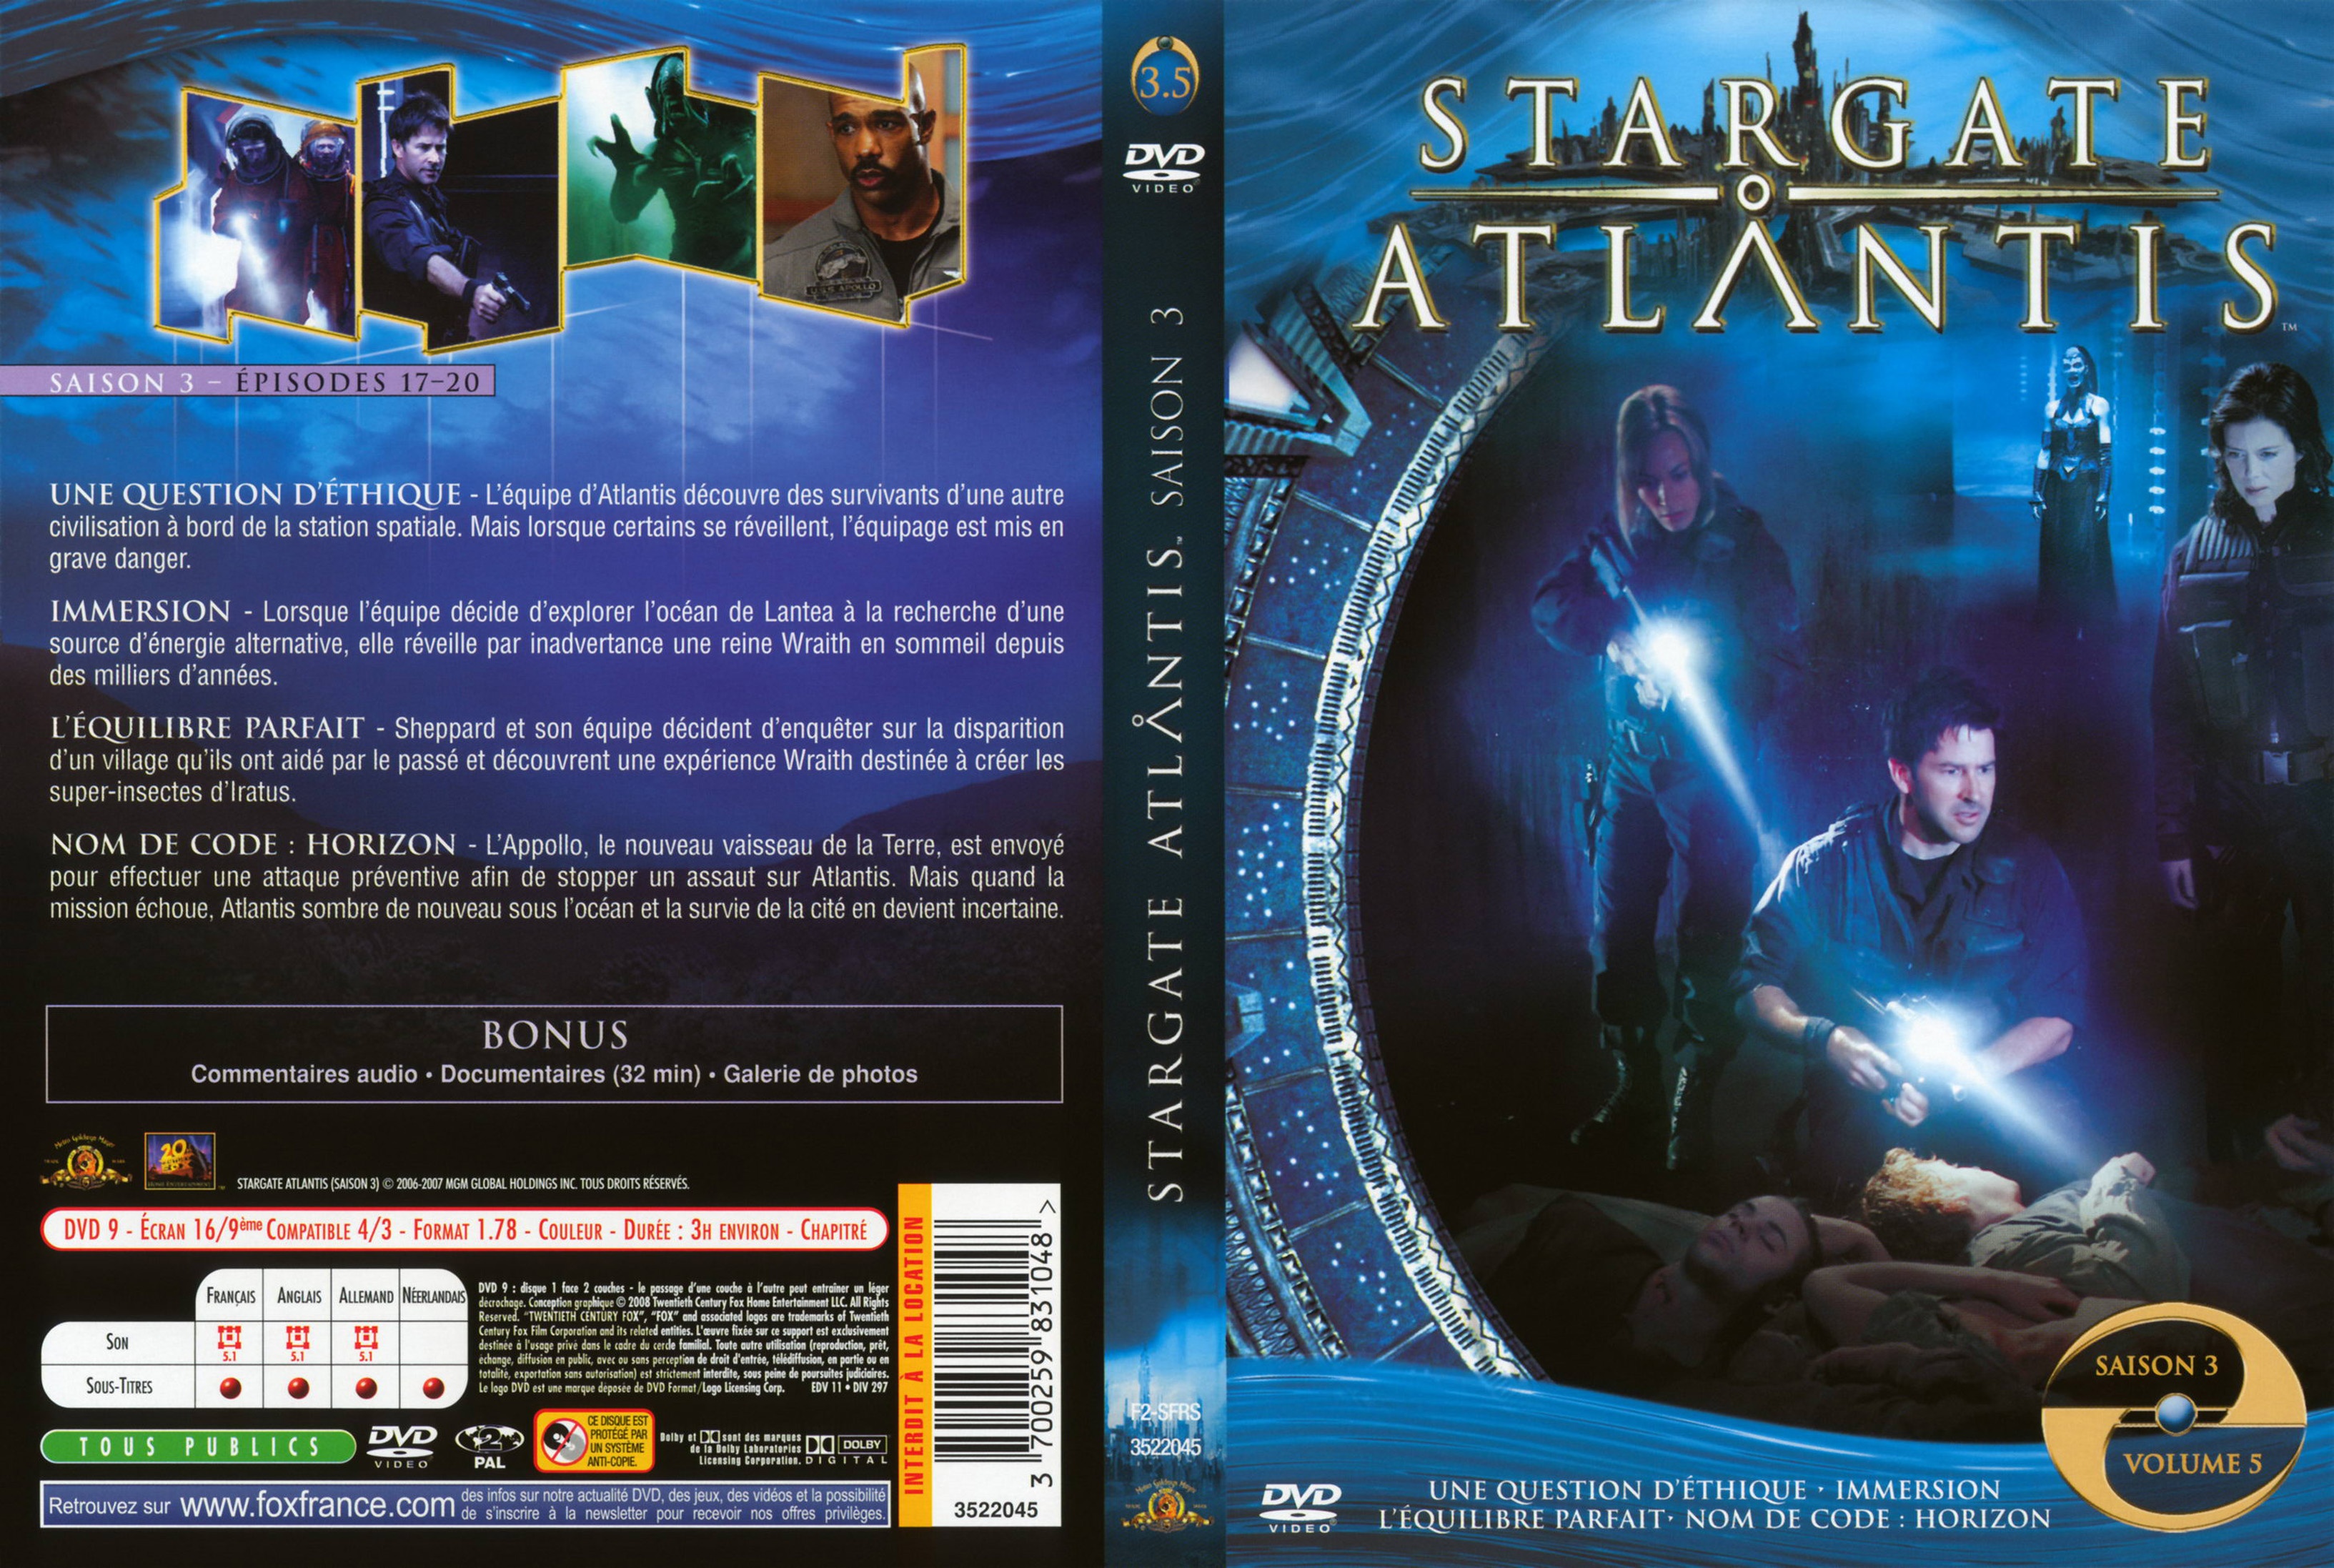 Jaquette DVD Stargate Atlantis Saison 3 vol 5